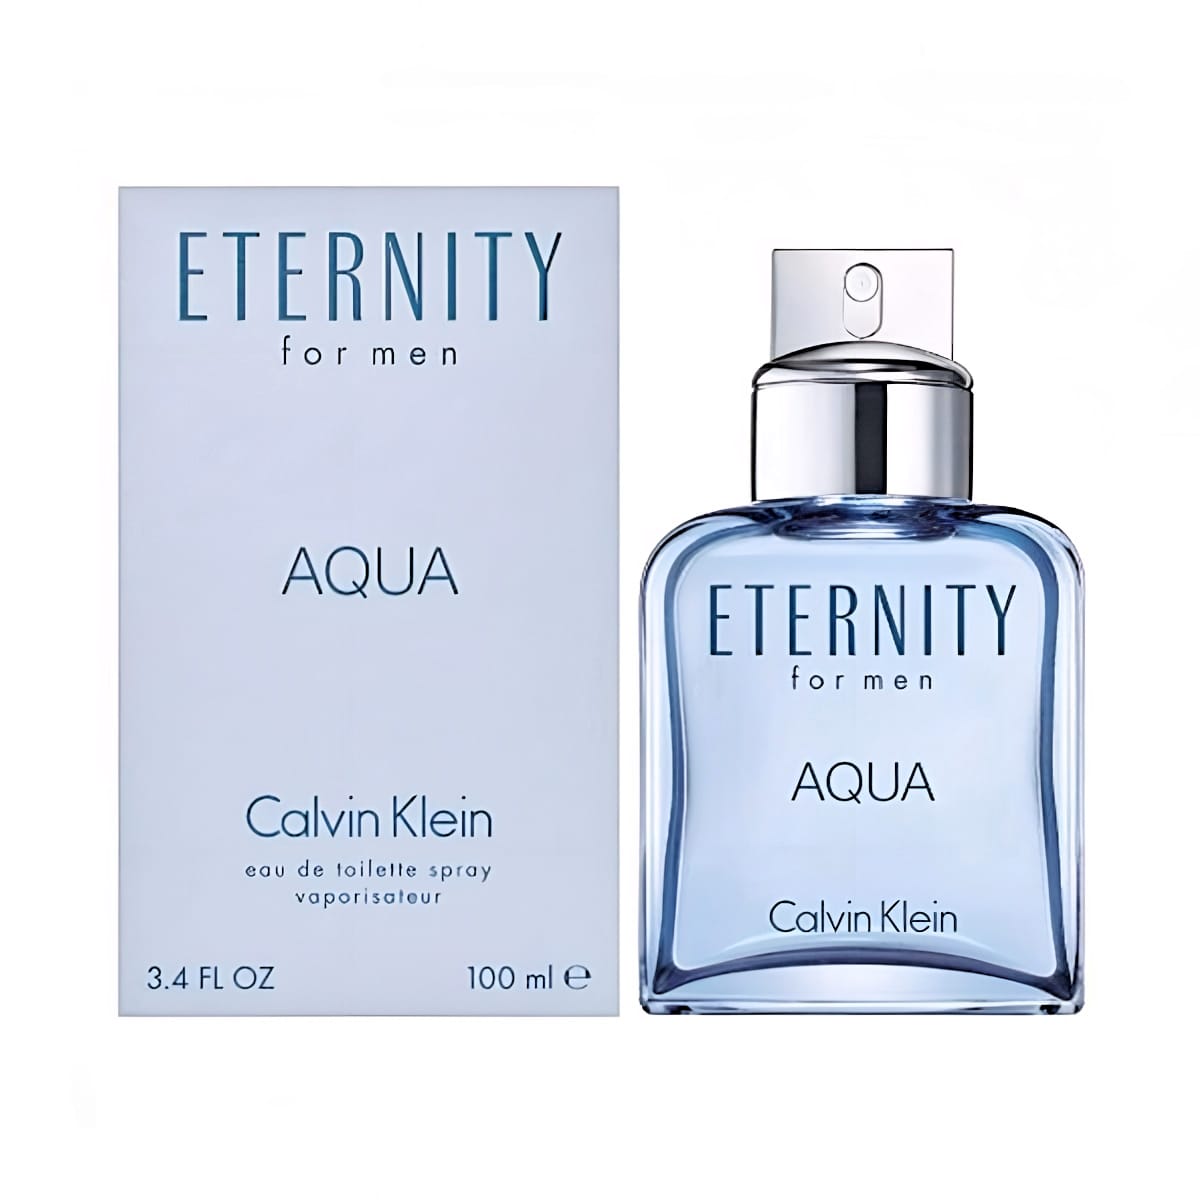 Calvin Klein 3607342107977 Eternity Aqua EDT Men 100ml